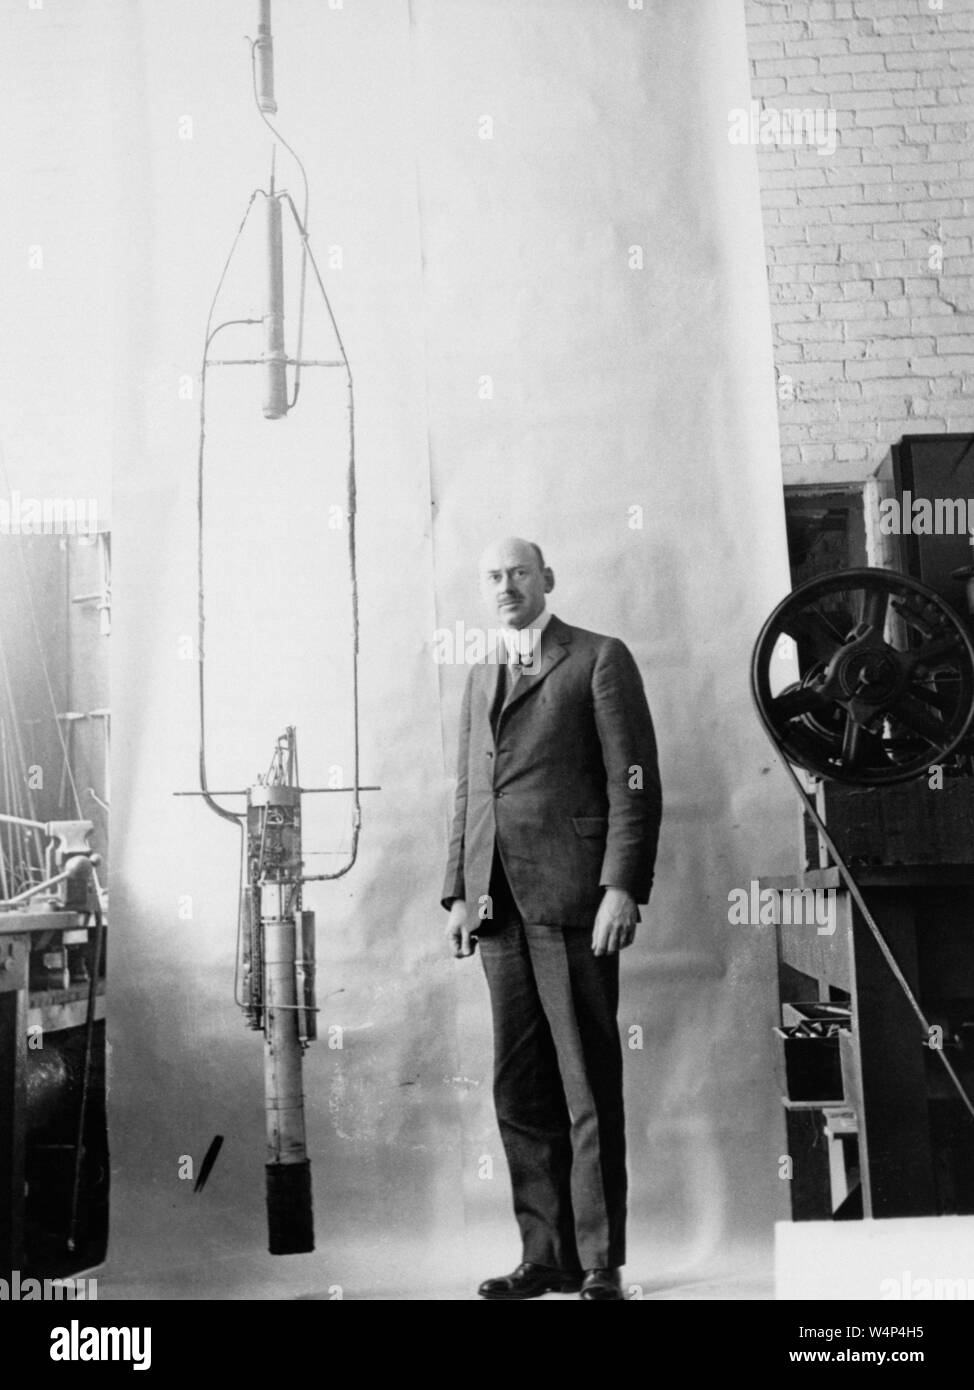 El Dr. Robert H. Goddard, posa junto a su cohete de combustible líquido, 1900. Imagen cortesía de la Administración Nacional de Aeronáutica y del Espacio (NASA). () Foto de stock